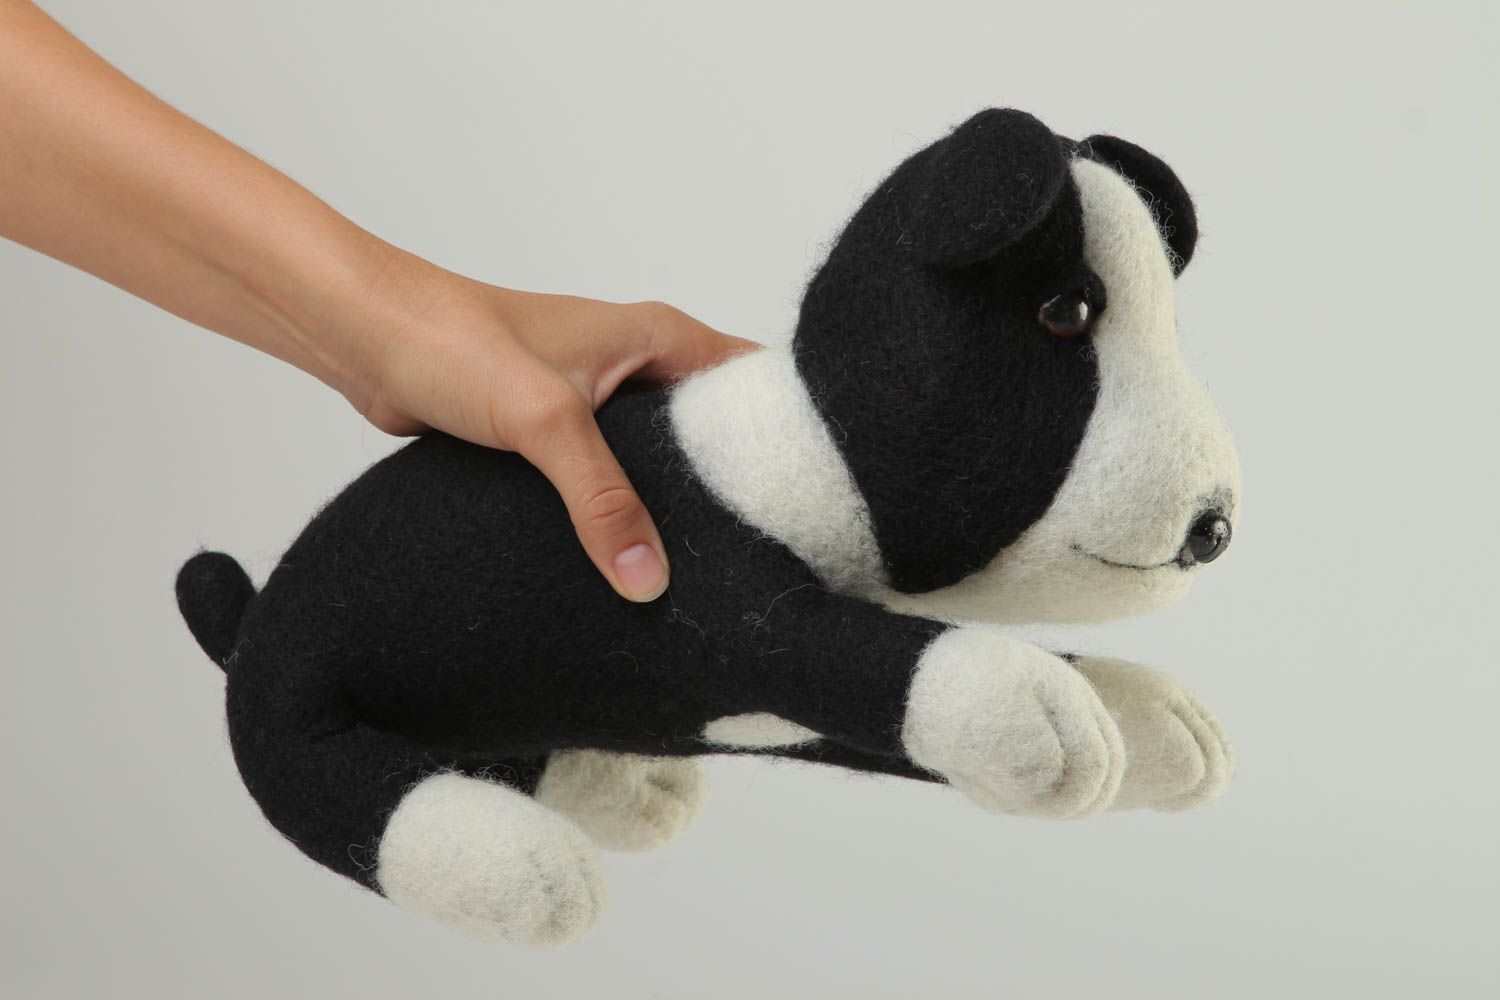 Handmade Spielsachen für Kinder Öko Kinderspielzeug Plüsch Hund schwarz weiß foto 5